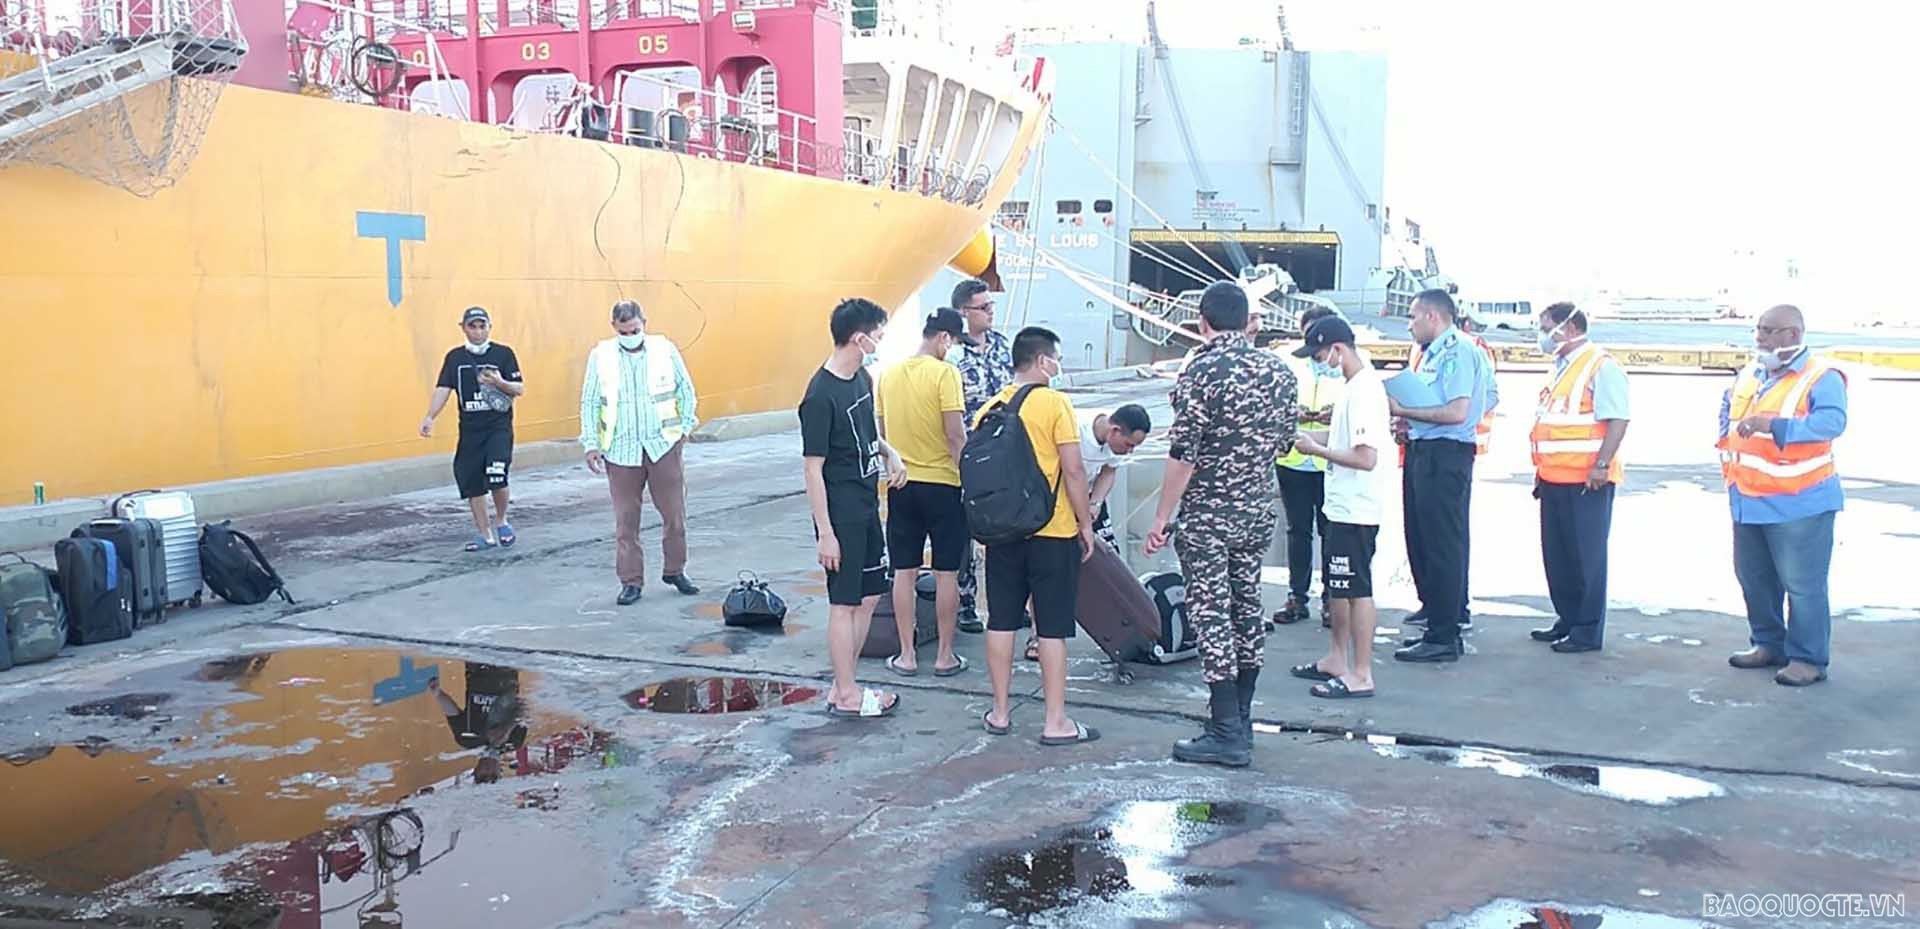 Các thuyền viên Việt Nam lấy đồ và làm thủ tục trước khi về nước.